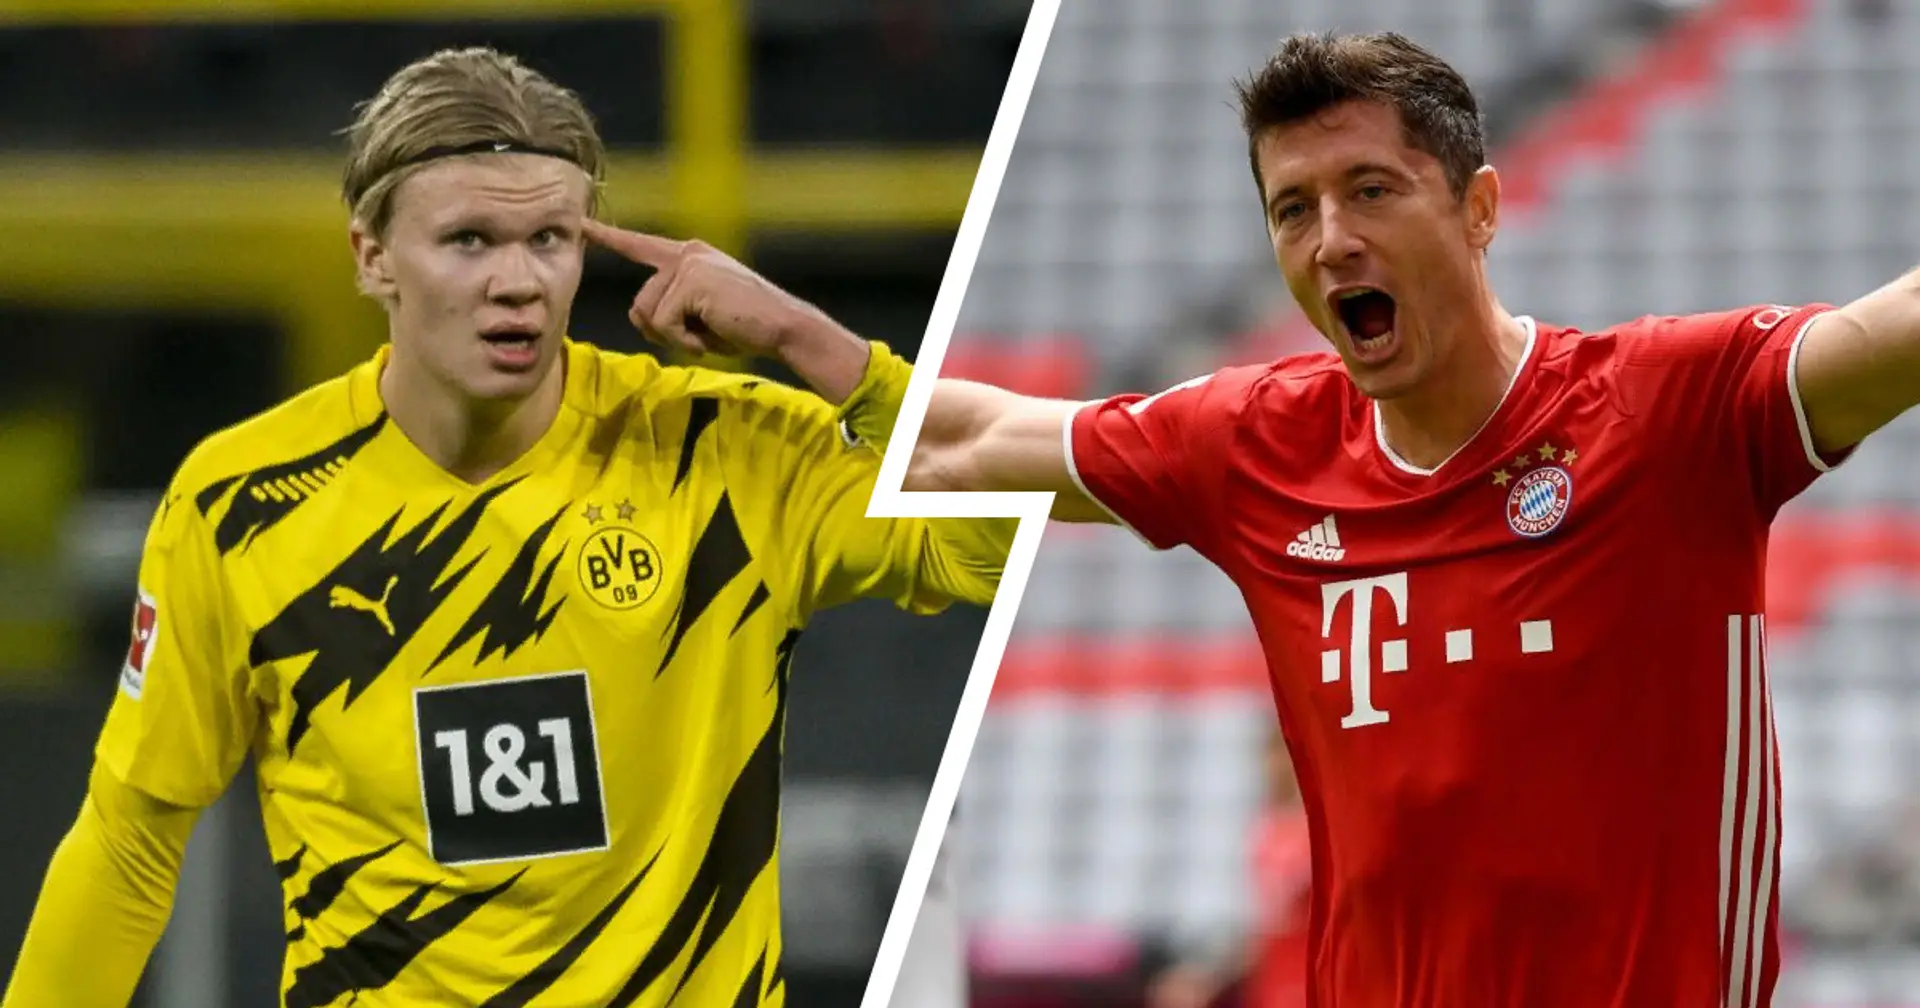 7 Teams vertreten, Lewandowski und Haaland dabei: Kicker veröffentlicht die Top-Elf der bisherigen Bundesliga-Saison